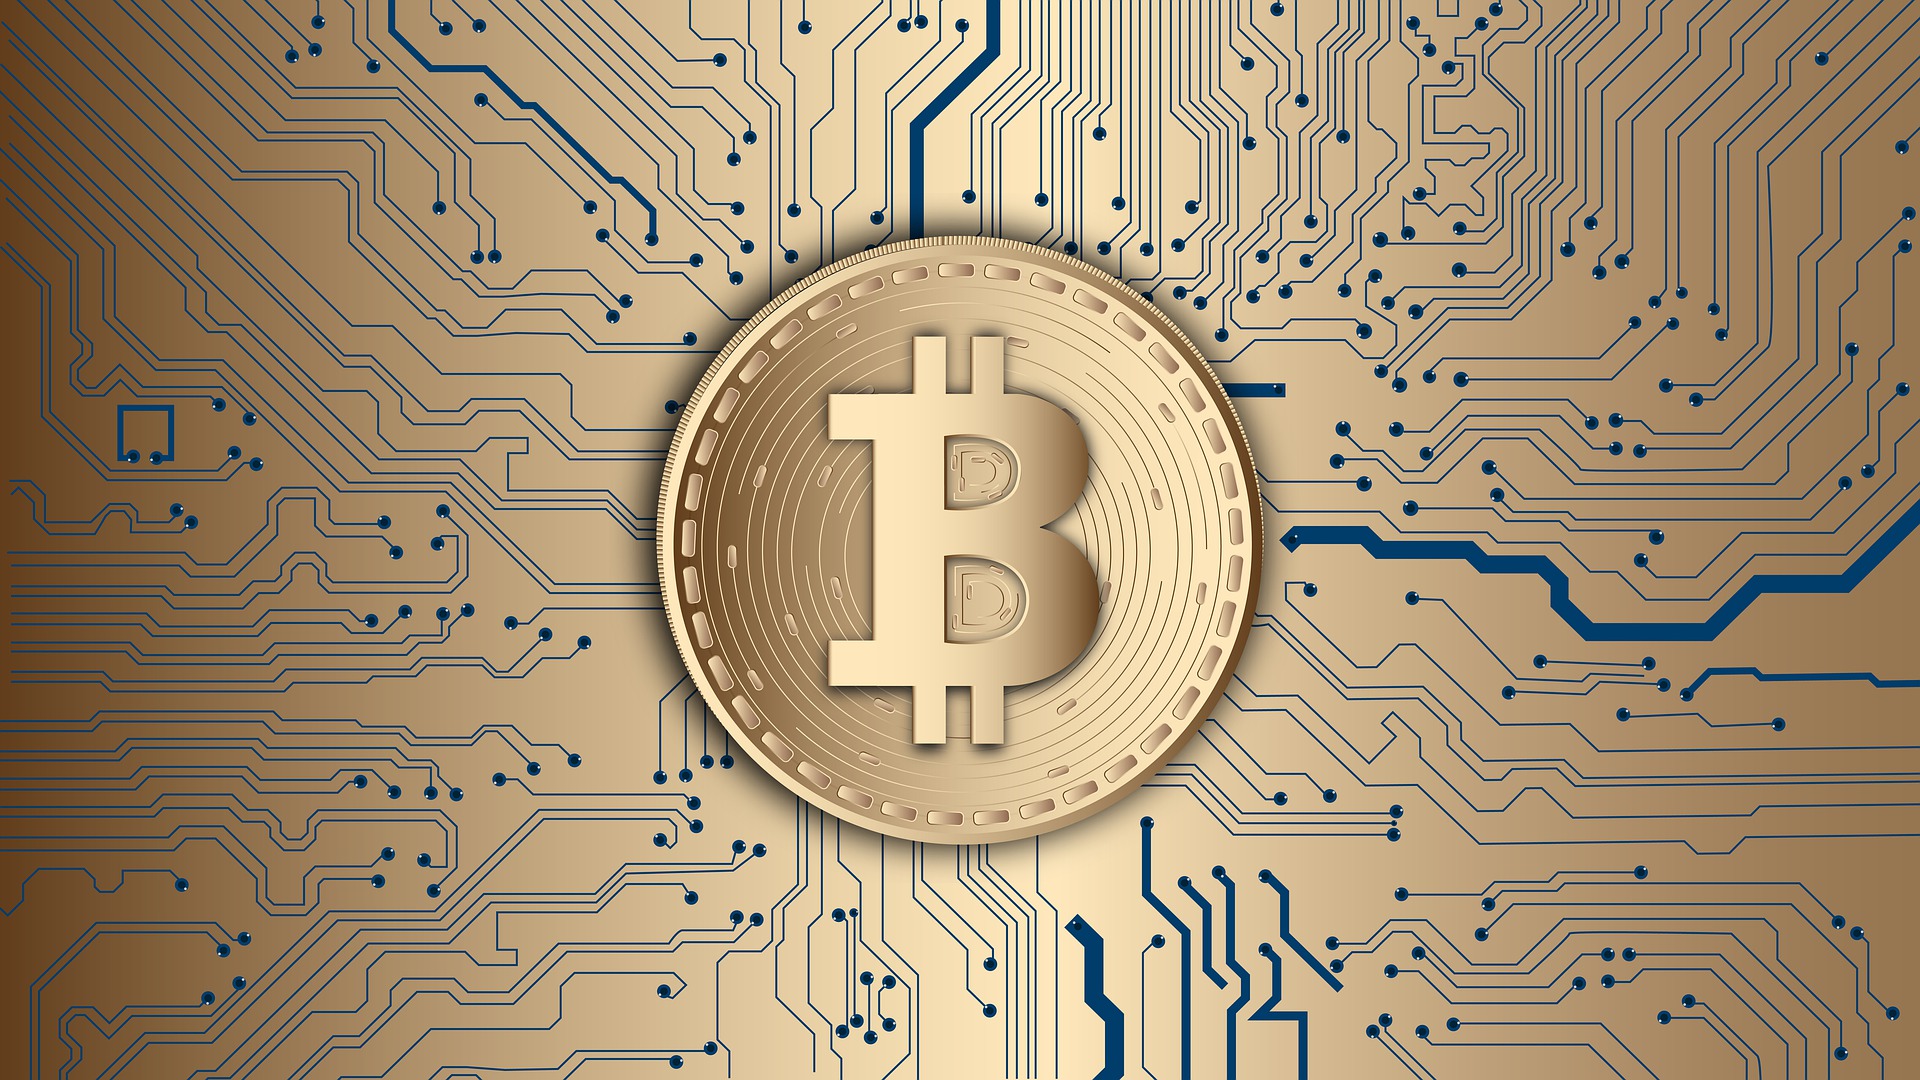 Pelninga „Bitcoin“ („Bitcoin“) strategija „Binance“ - naujos dienos kriptografija